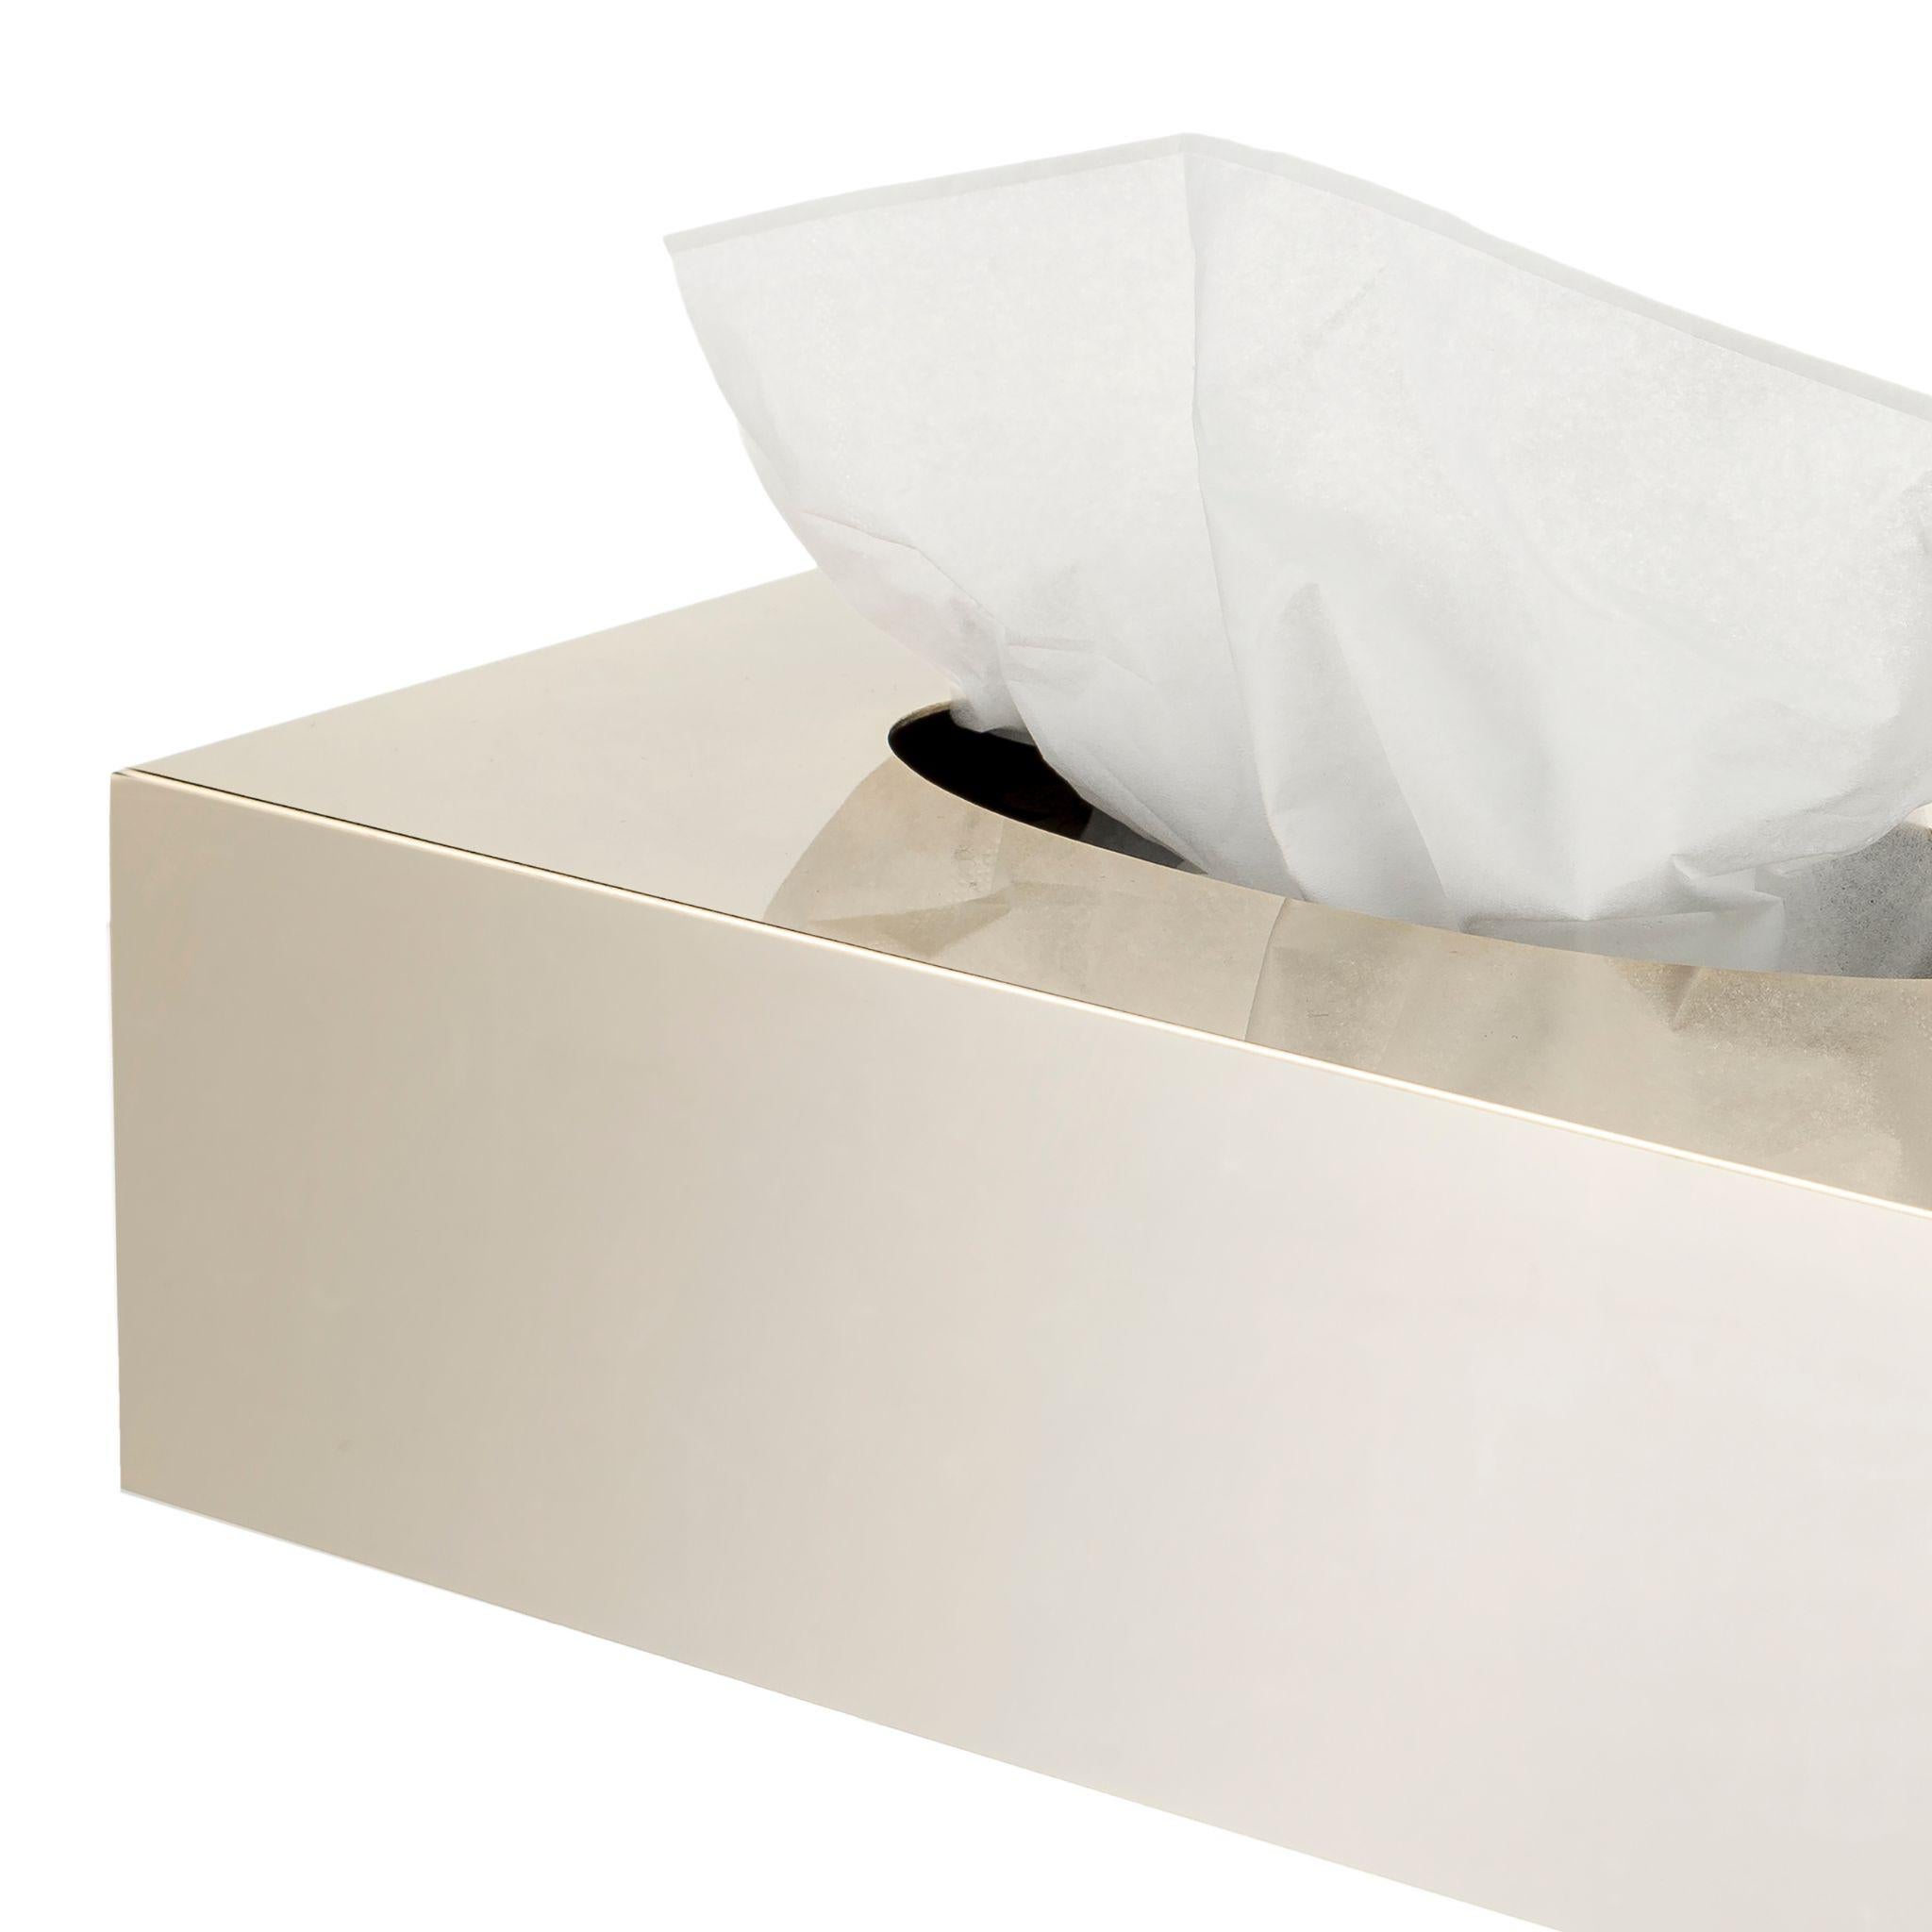 tissue box dimensions